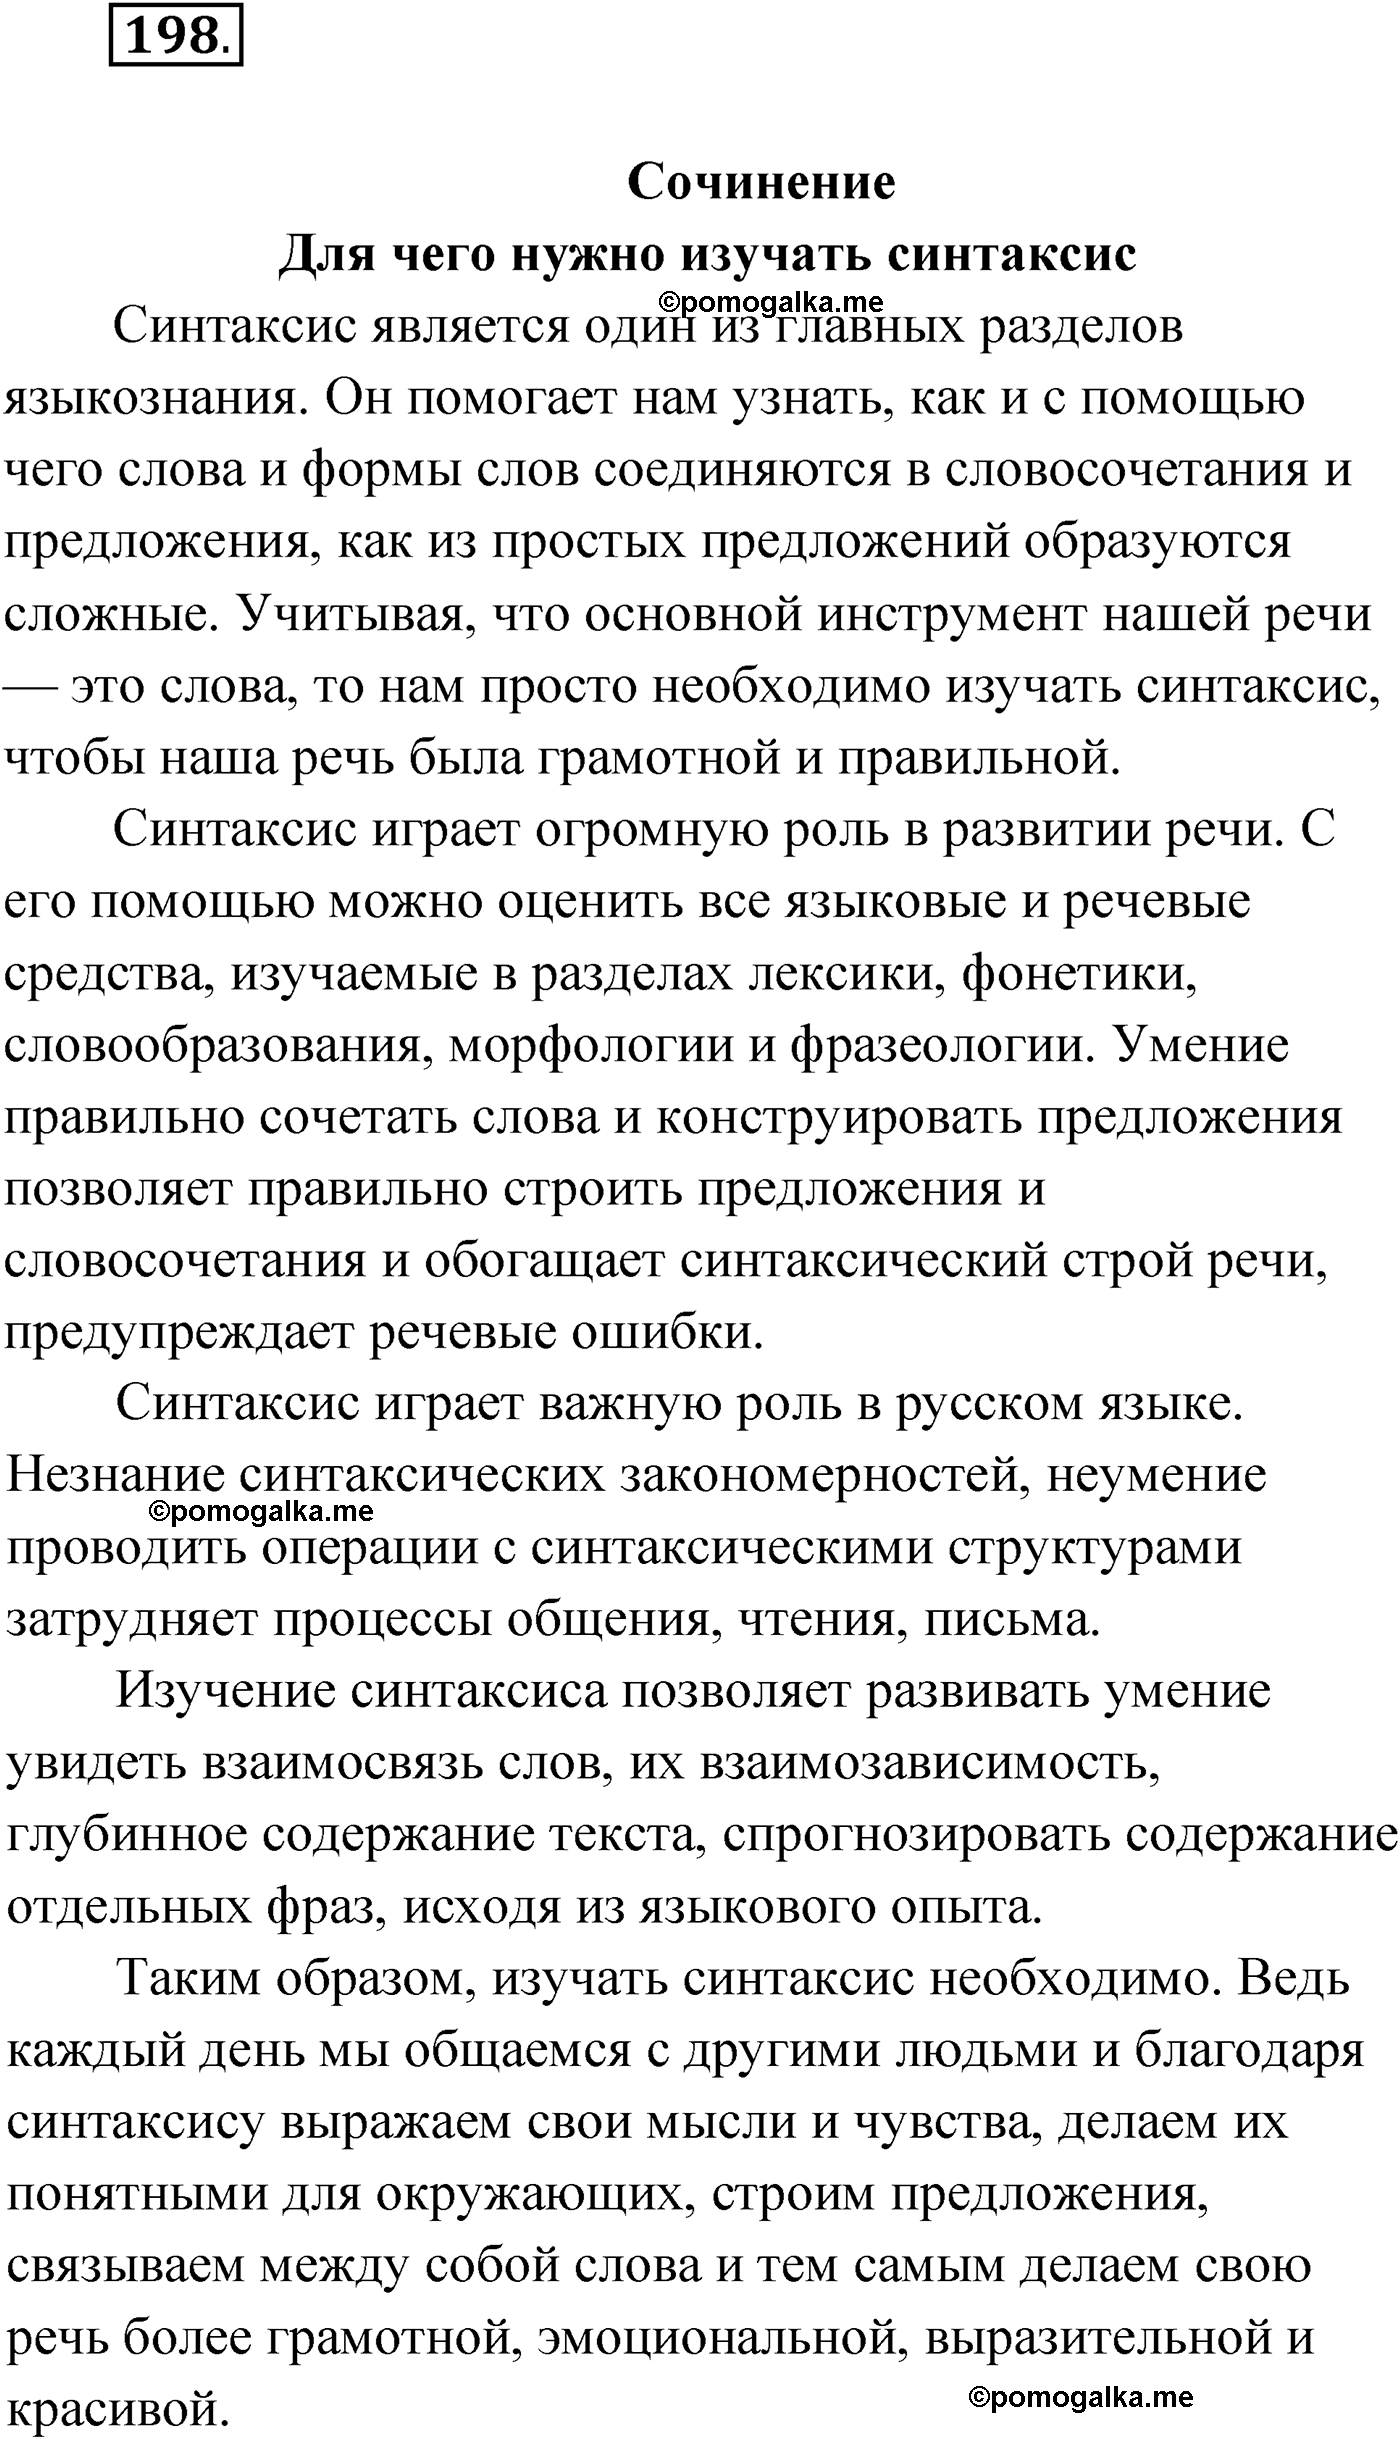 упражнение №198 русский язык 9 класс Мурина 2019 год